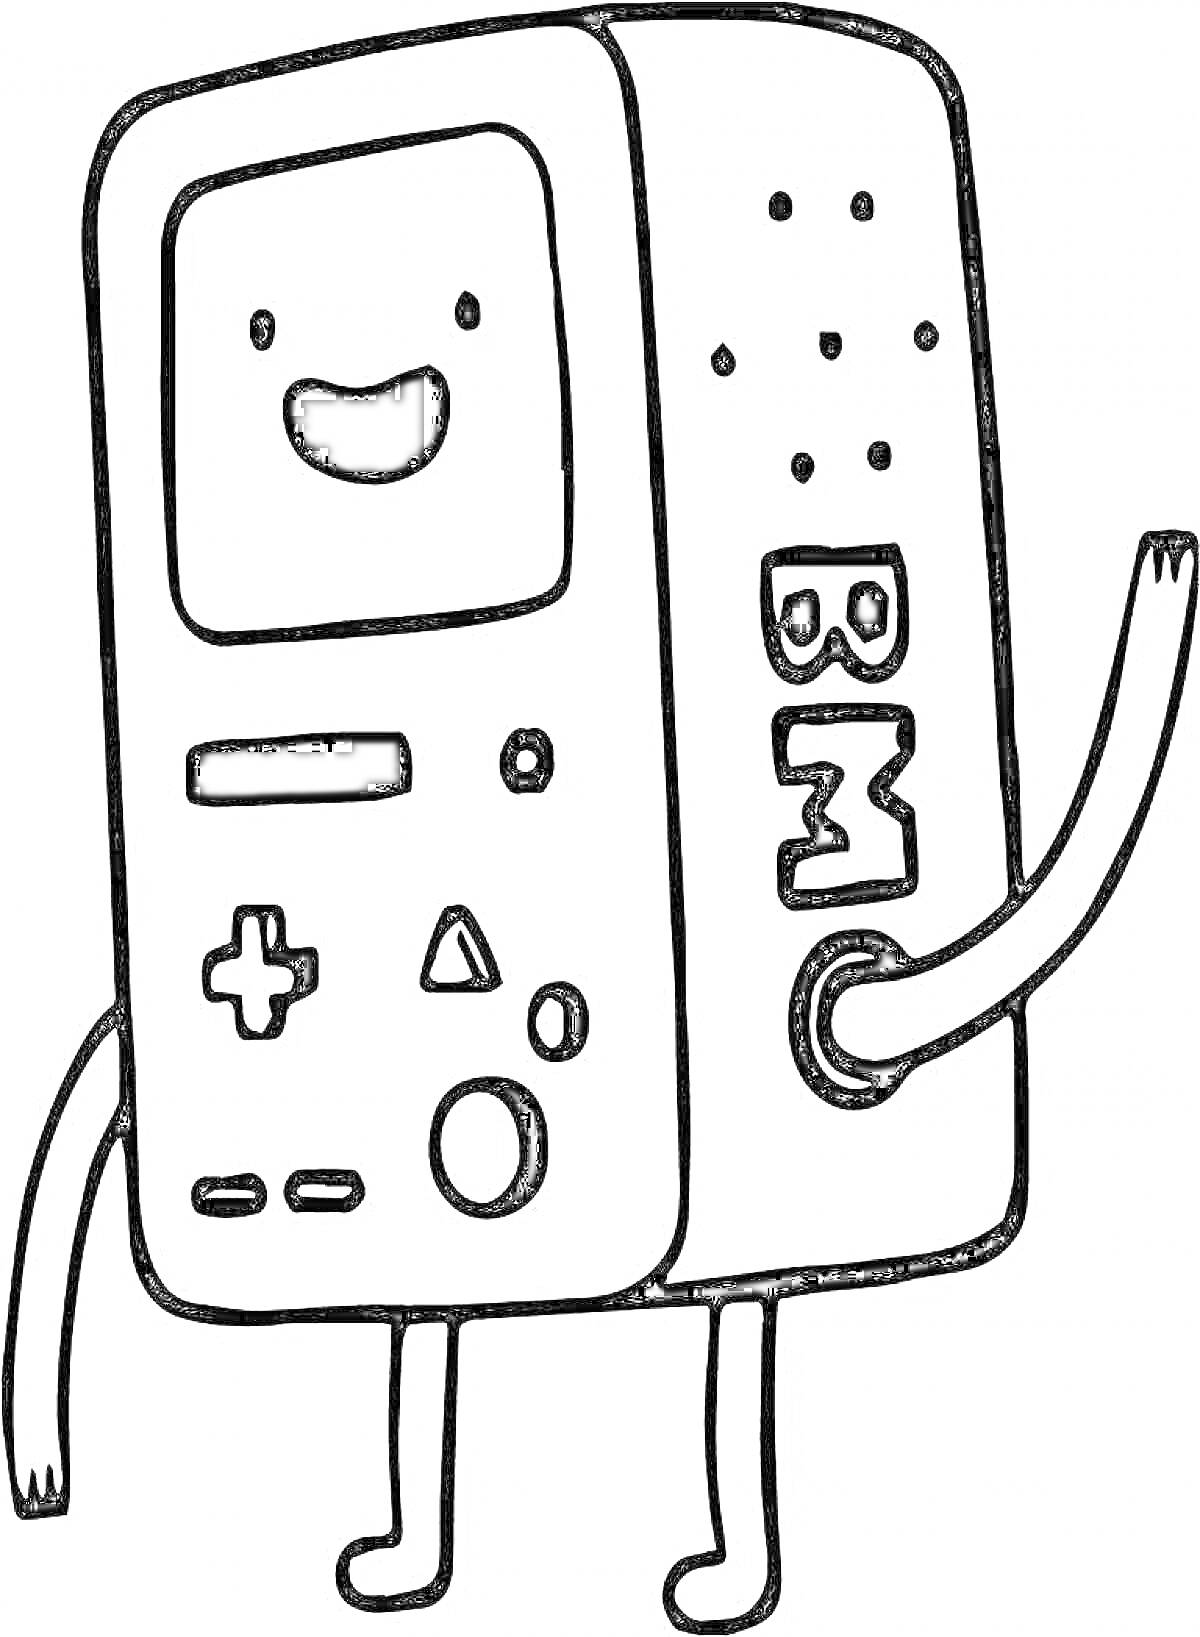 персонаж в форме тетрис-игровой консоли с руками и ногами, улыбающийся экран, крестовина управления, кнопки, надпись 